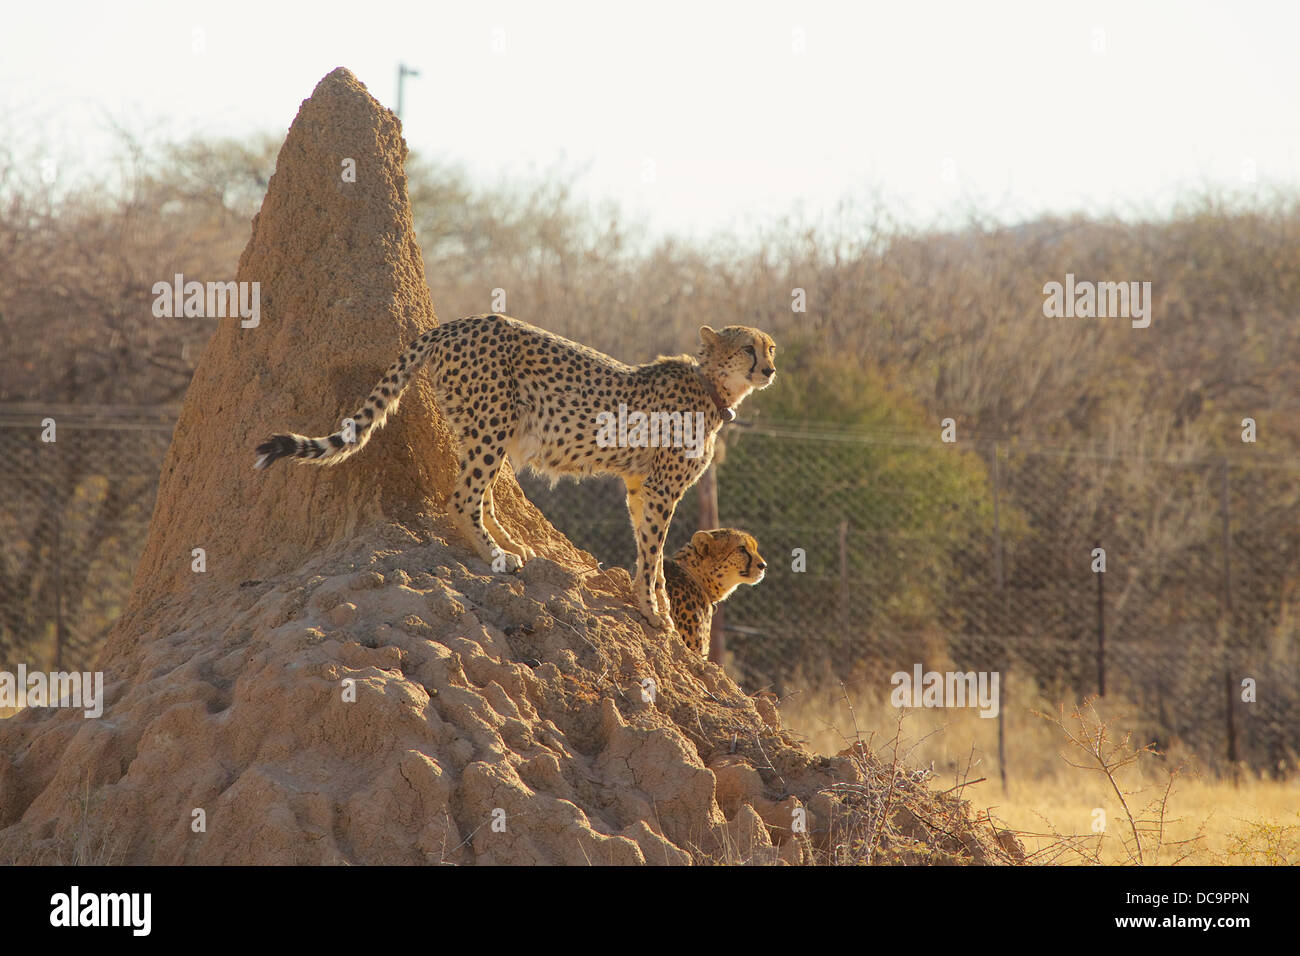 Cheetahs on termite mound on lookout Stock Photo